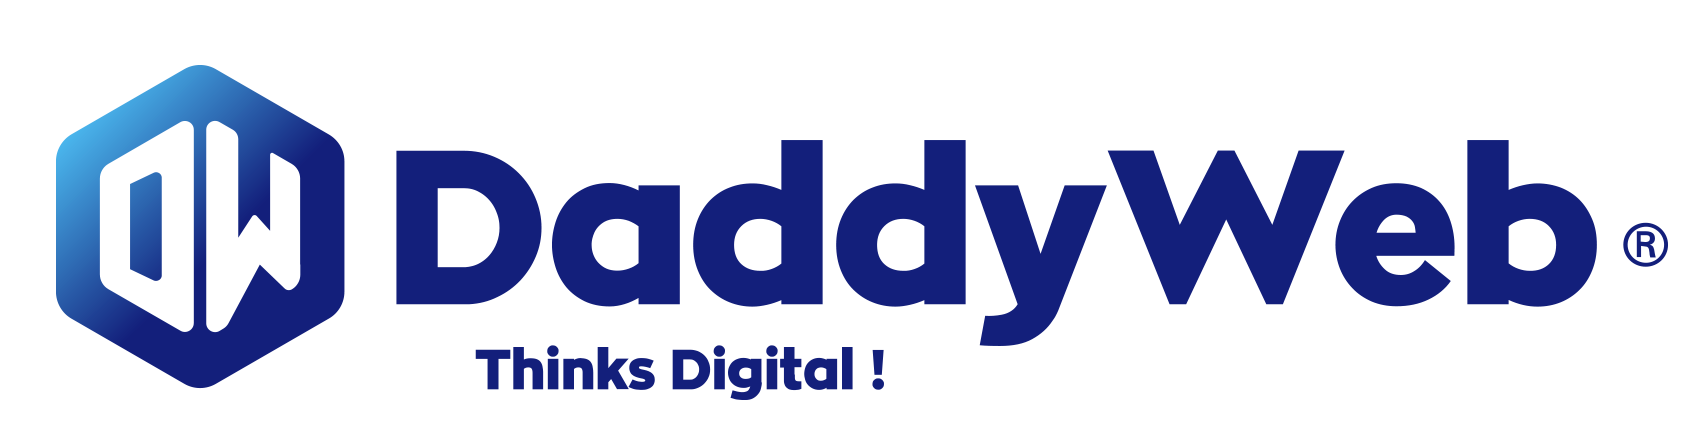 Logo daddyweb thinks digital - agence création site internet